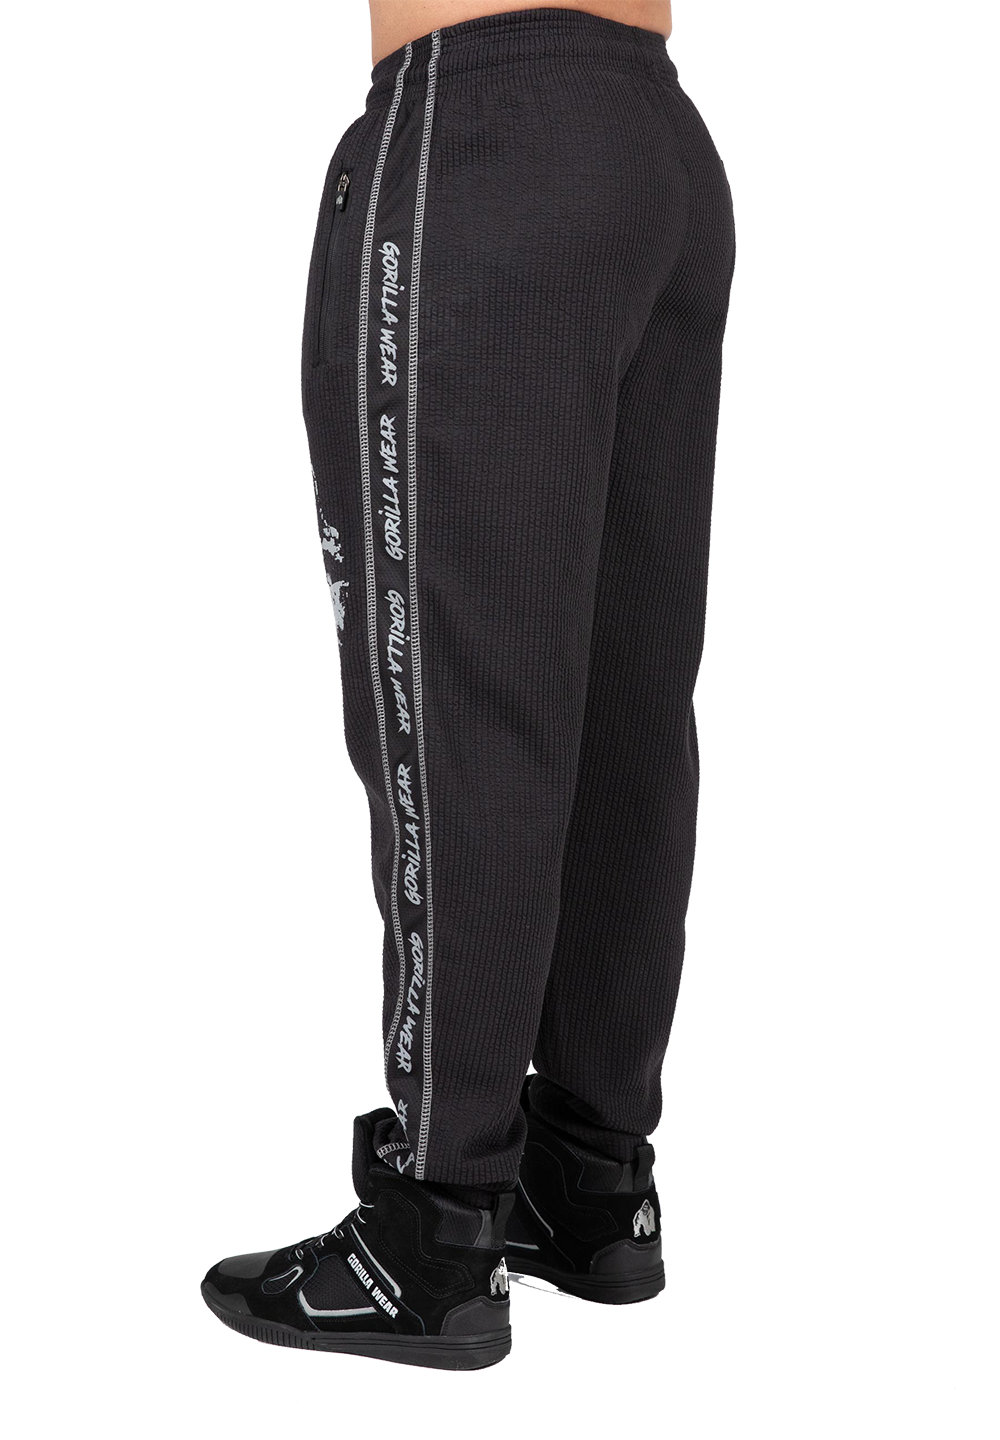 Штаны Buffalo Old School Workout Pants – Black/Gray от Gorilla Wear